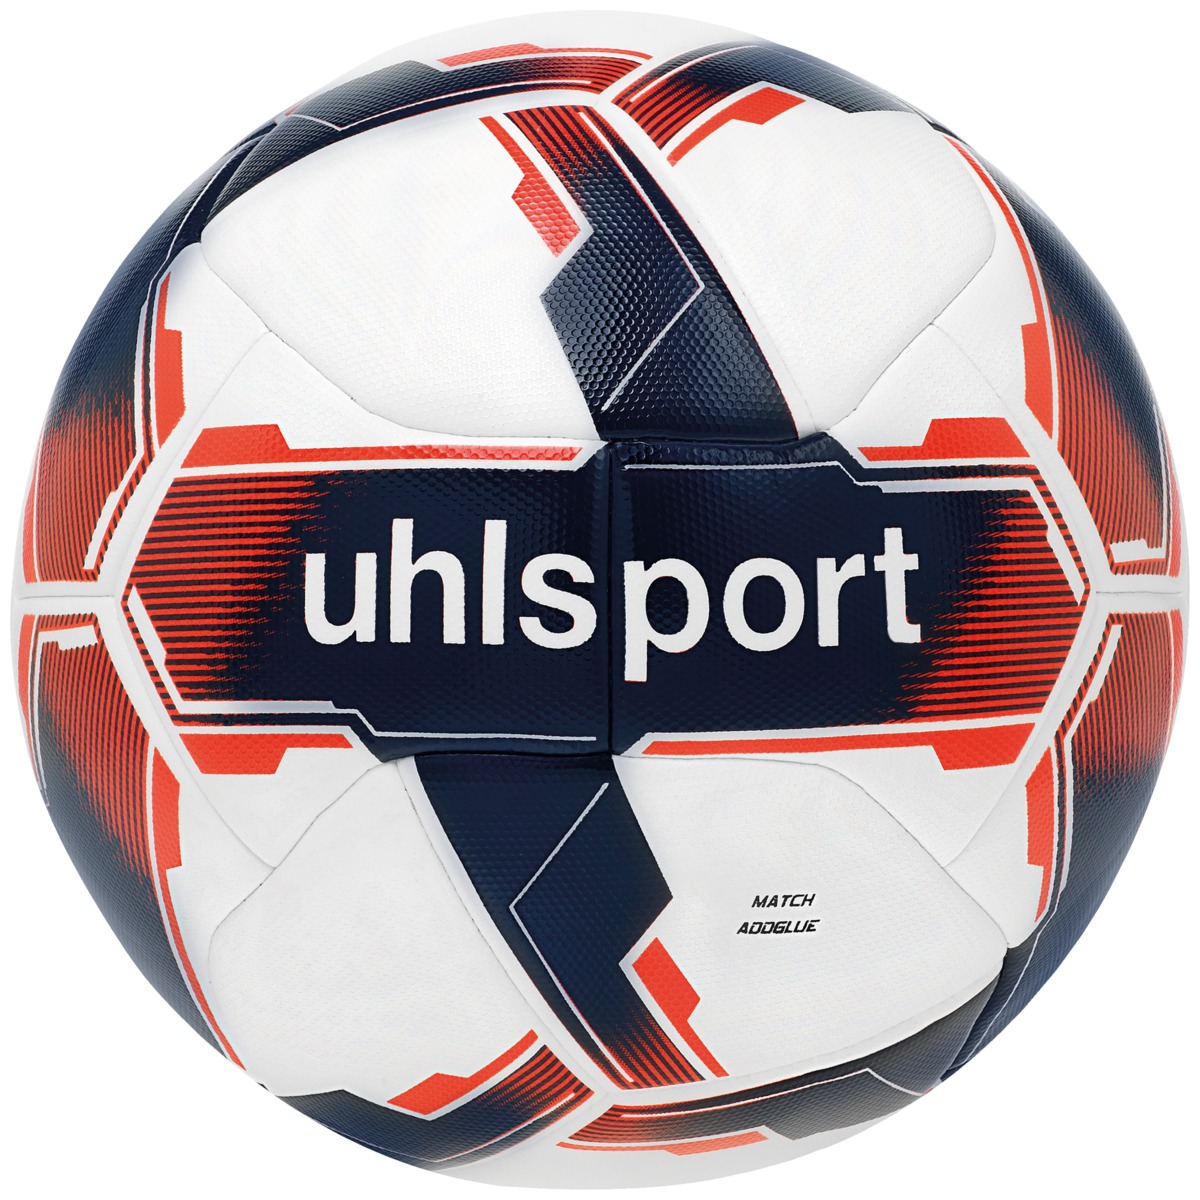 BALLON DE FOOTBALL MATCH ADDGLUE - UHLSPORT